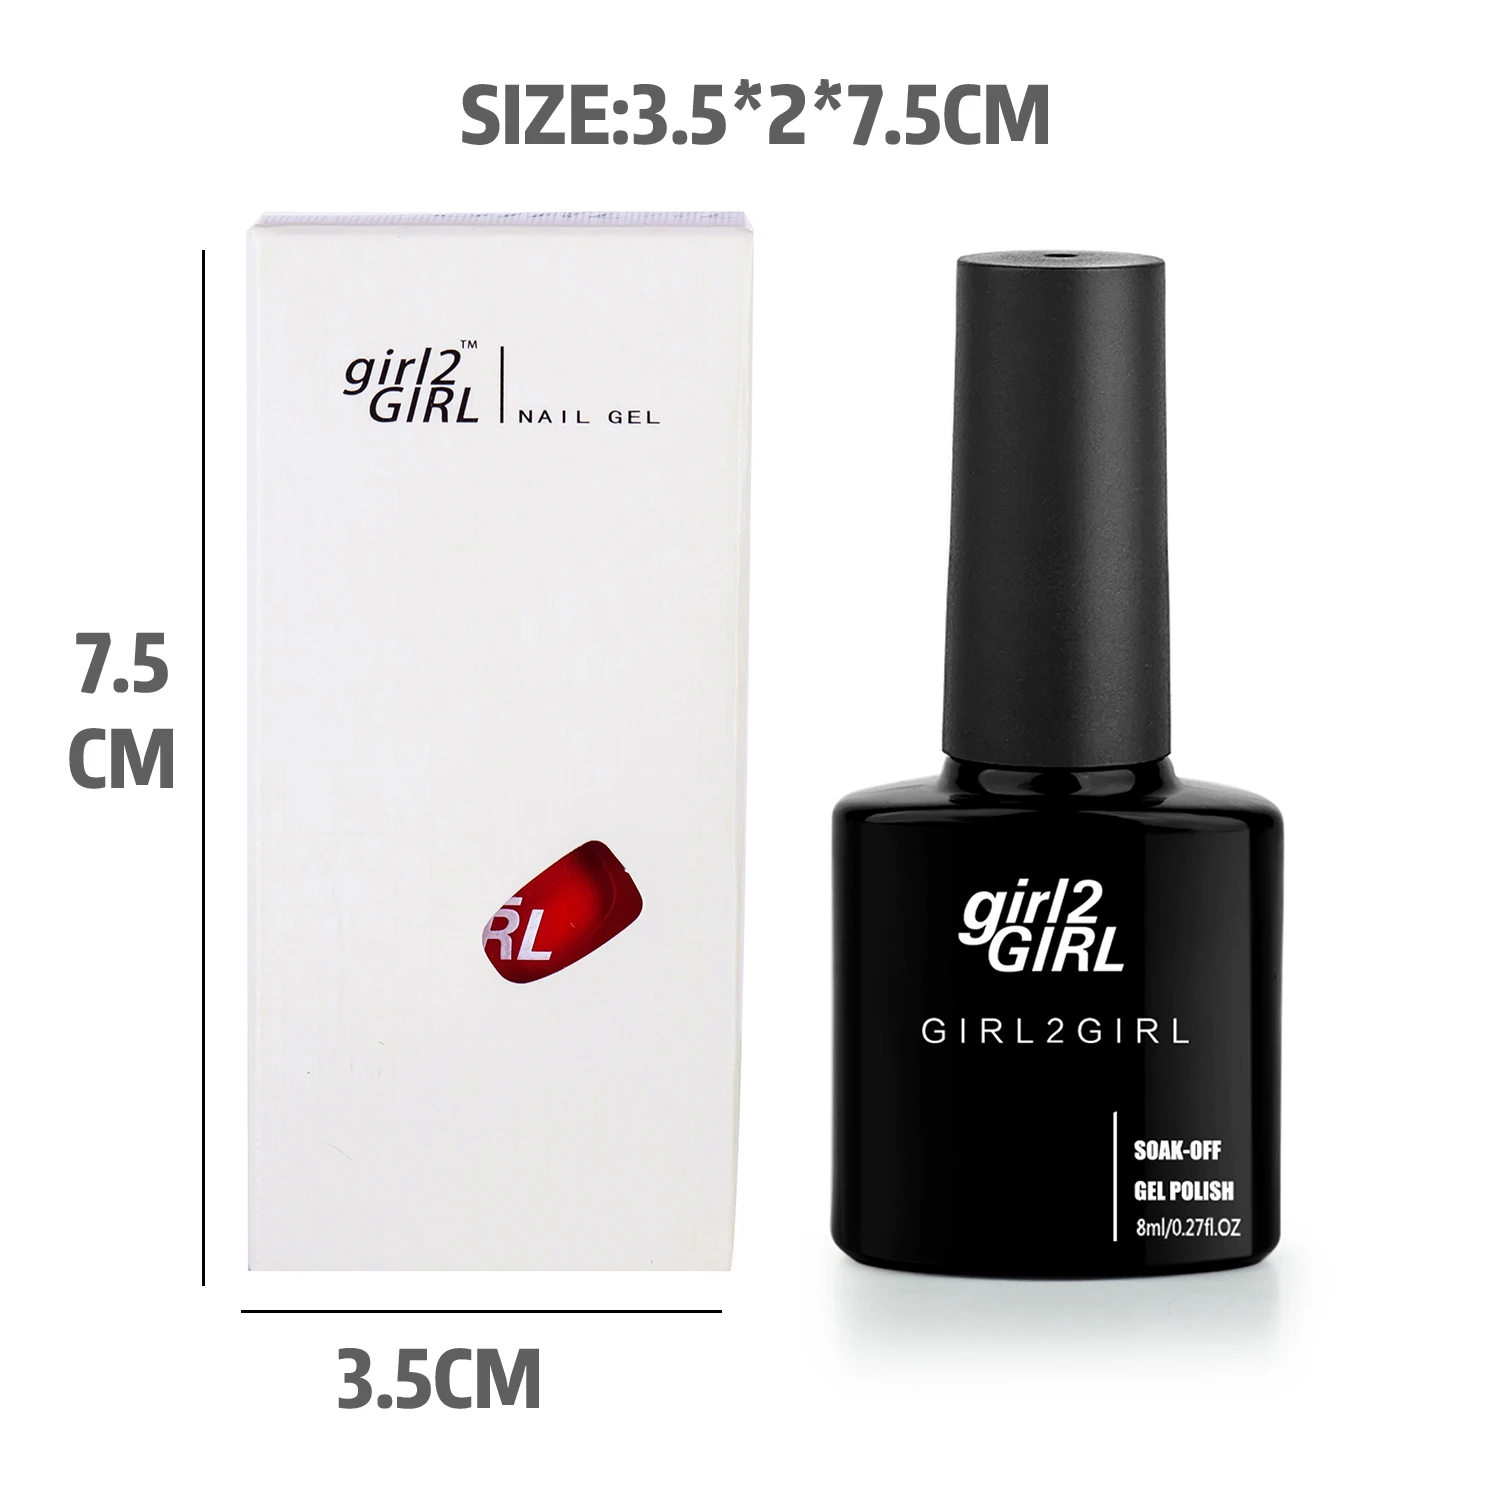 Girl2GIRL отмачиваемый гель УФ светодиодный лак для маникюра 8 мл 280 цветов супер блестящий Гель-лак для ногтей черная бутылка набор телесного цвета